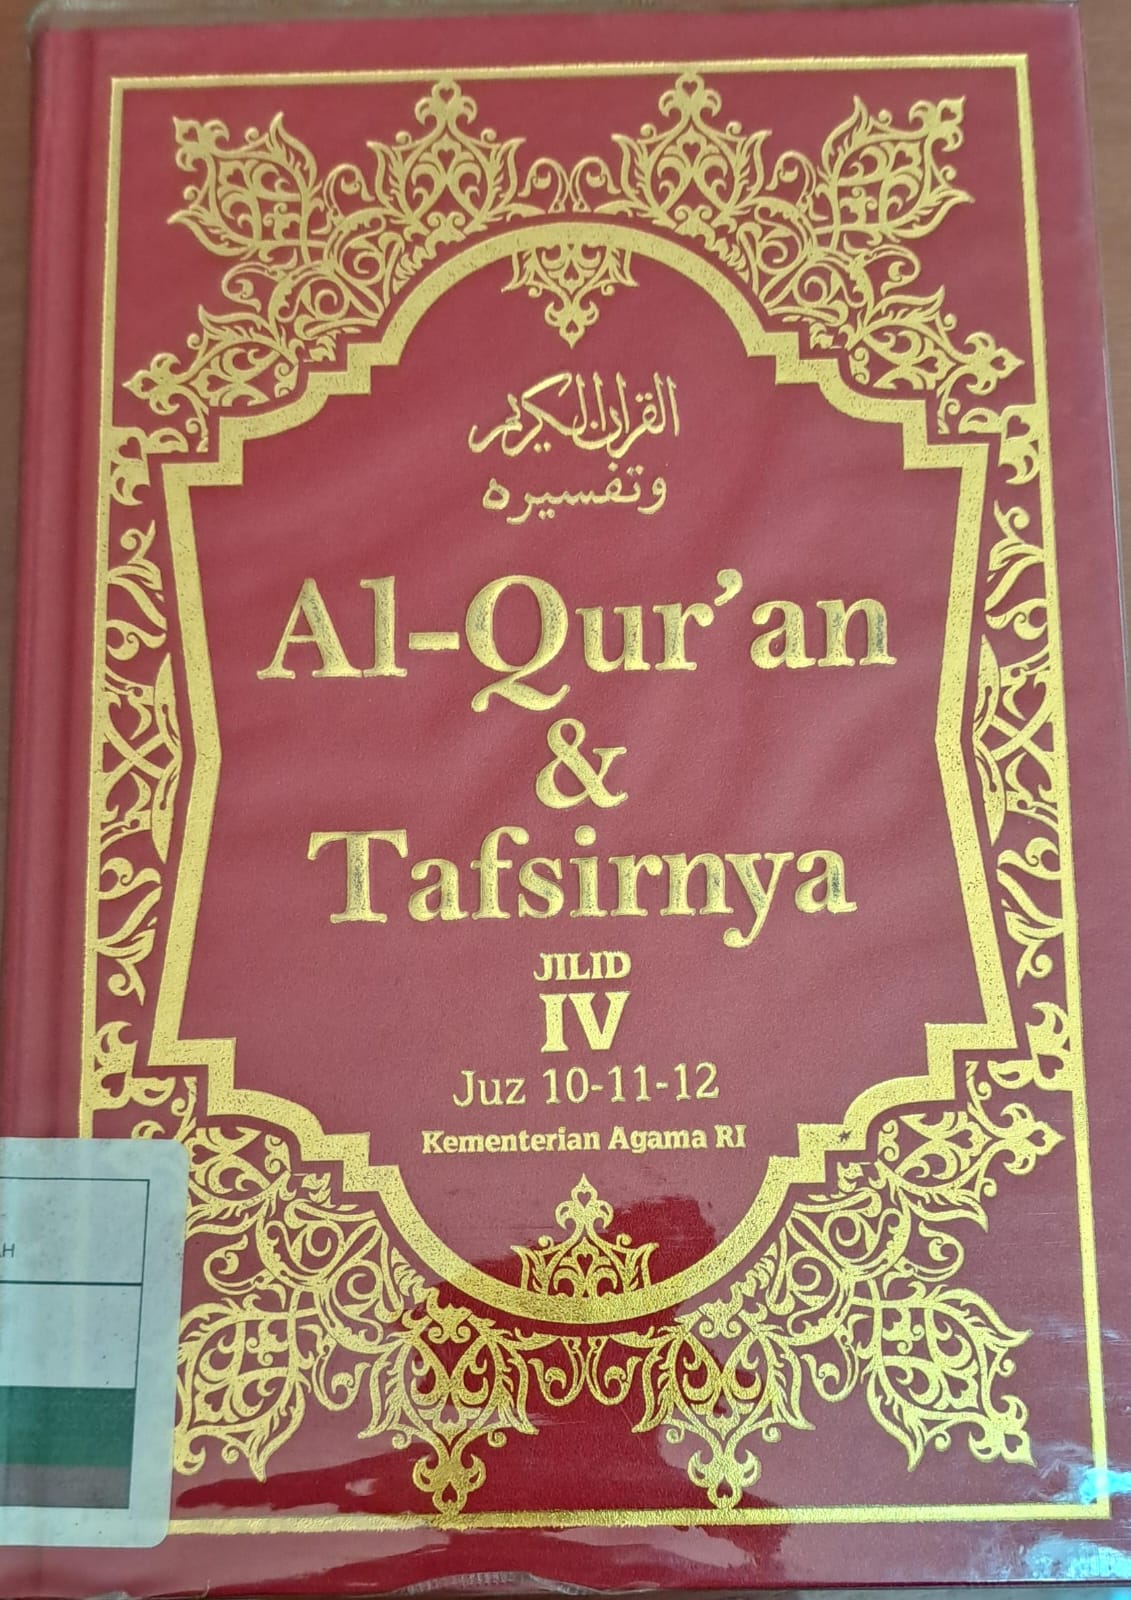 Al-qur'an & tafsirnya jilid IV :  Juz 10-11-12